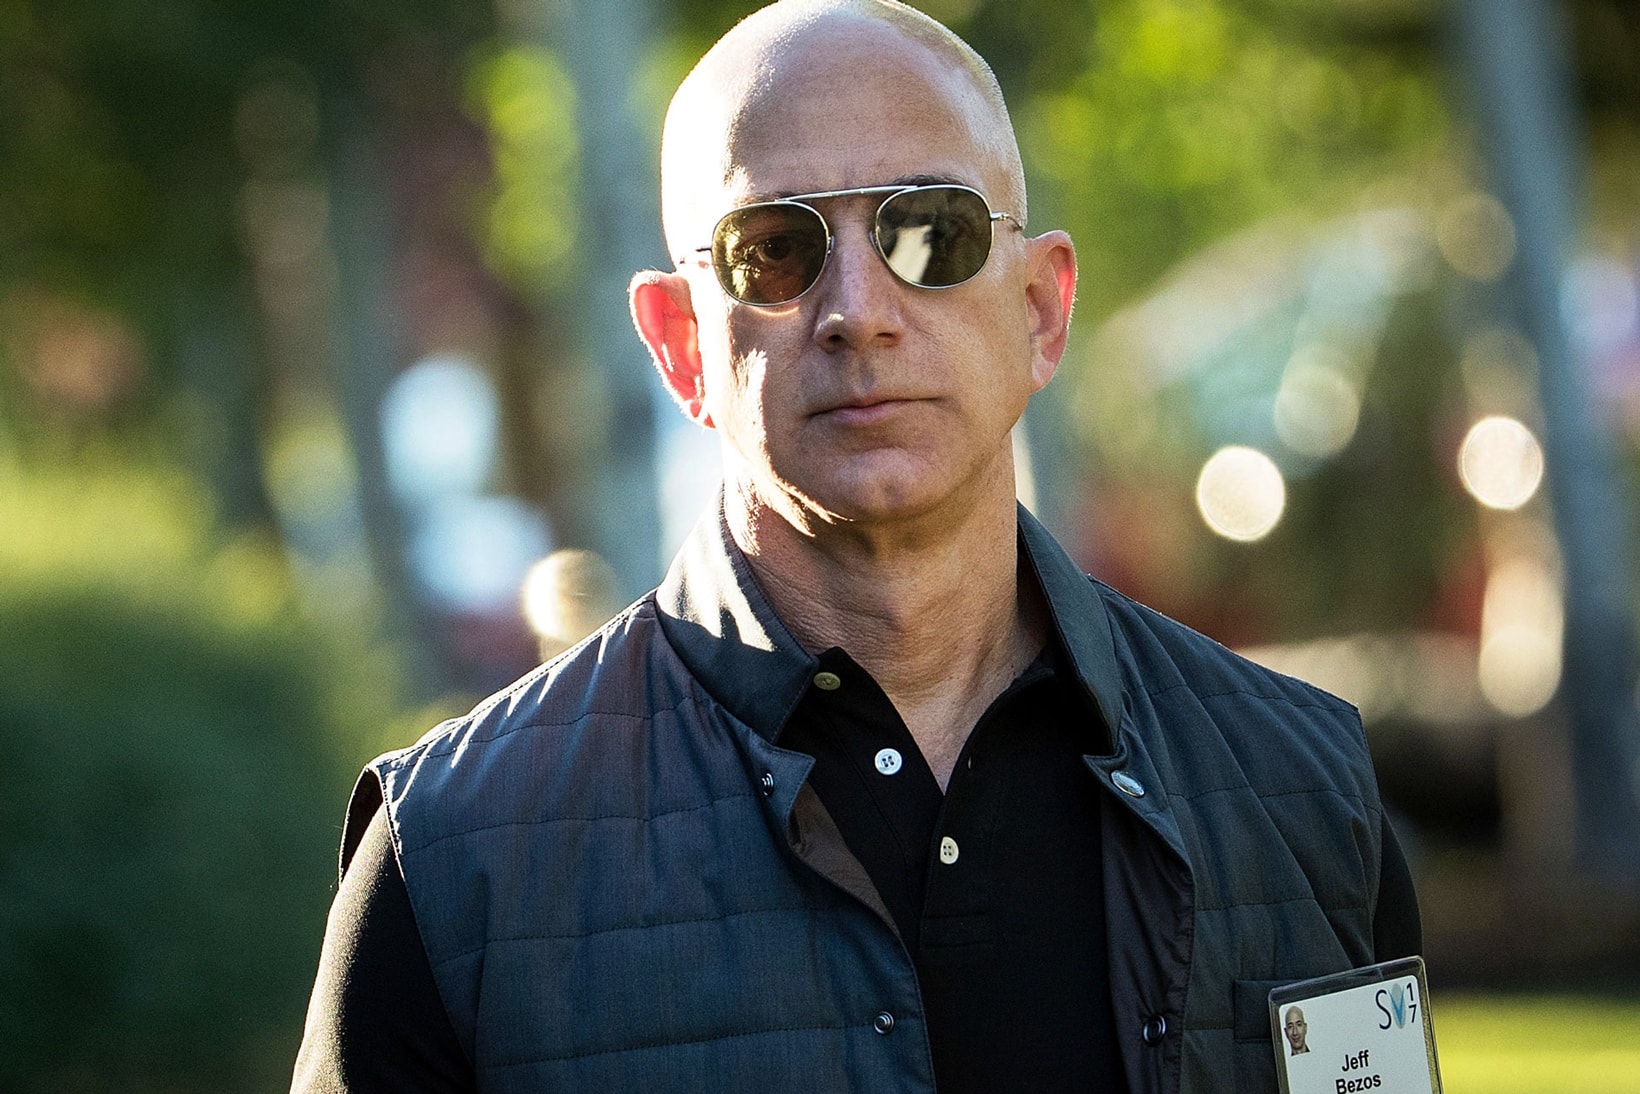 Jeff Bezos Richest Person Amazon Stock Fortune Wealth